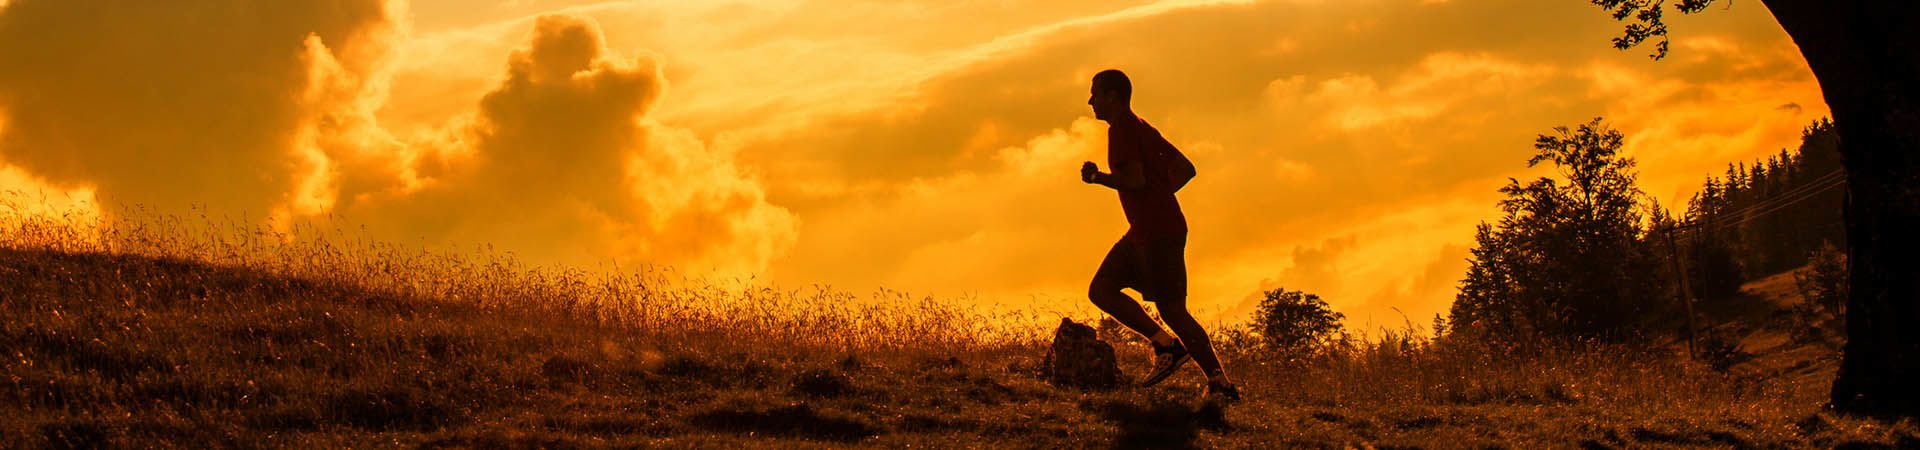 Bieganie dla początkujących – bieganie i jogging poprawiają kondycję.